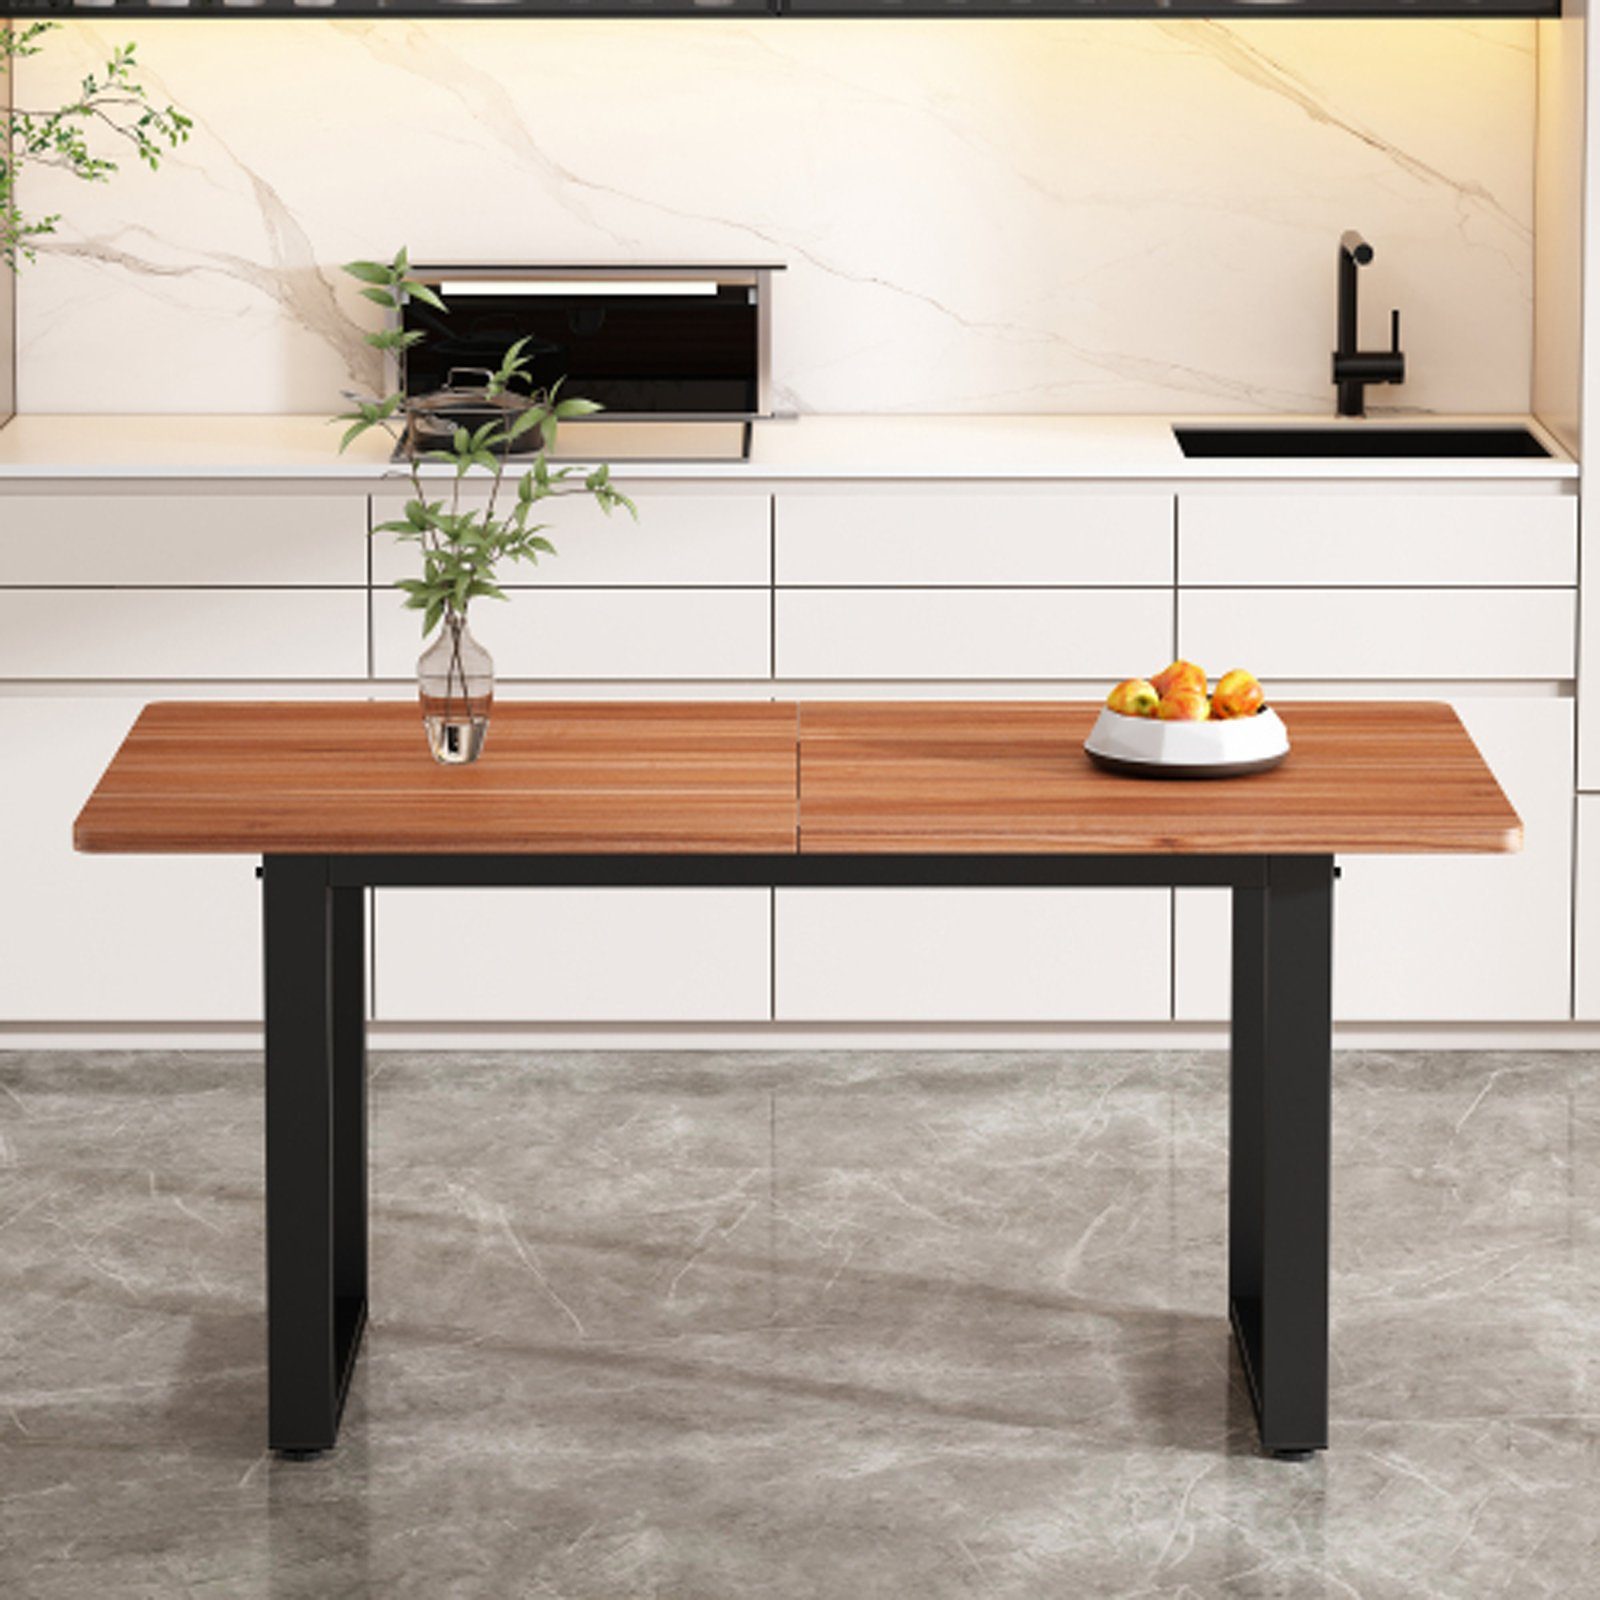 Stahl und Tisch Esstisch SEEZSSA Braun aus ausziehbarer holz, 140x70cm Holz Industriestil,esstisch Kaffee-Freizeittisch Küchenstuhl (Esszimmerestuhl), Hochwertigem